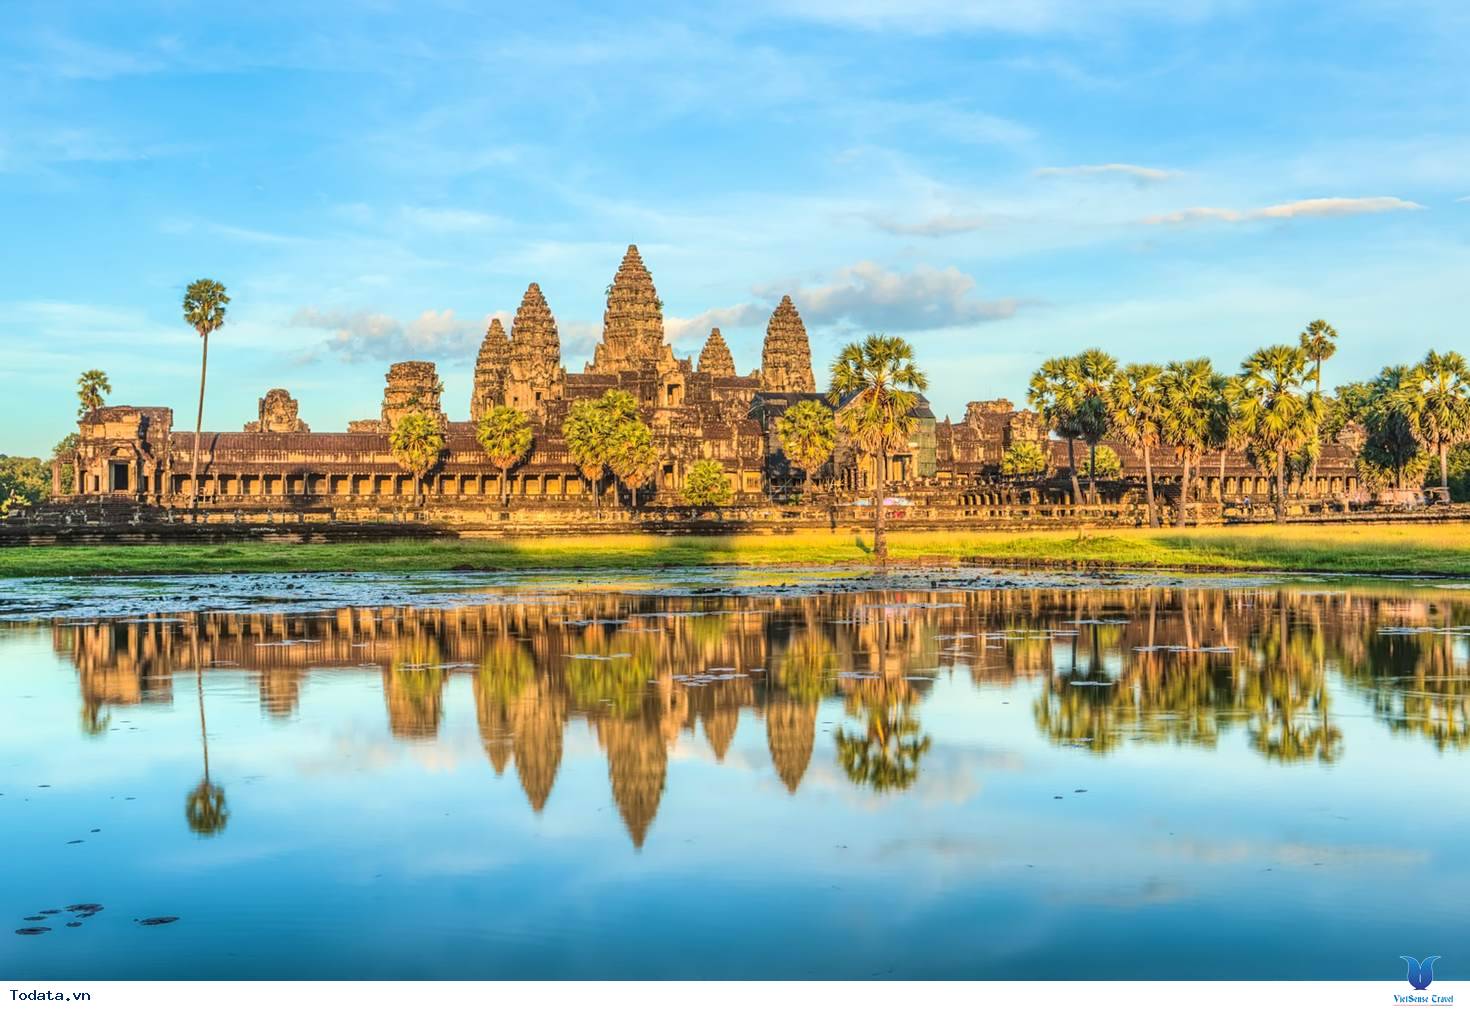 Angkor Wat tuyệt đỉnh của nghệ thuật kiến trúc Khmer